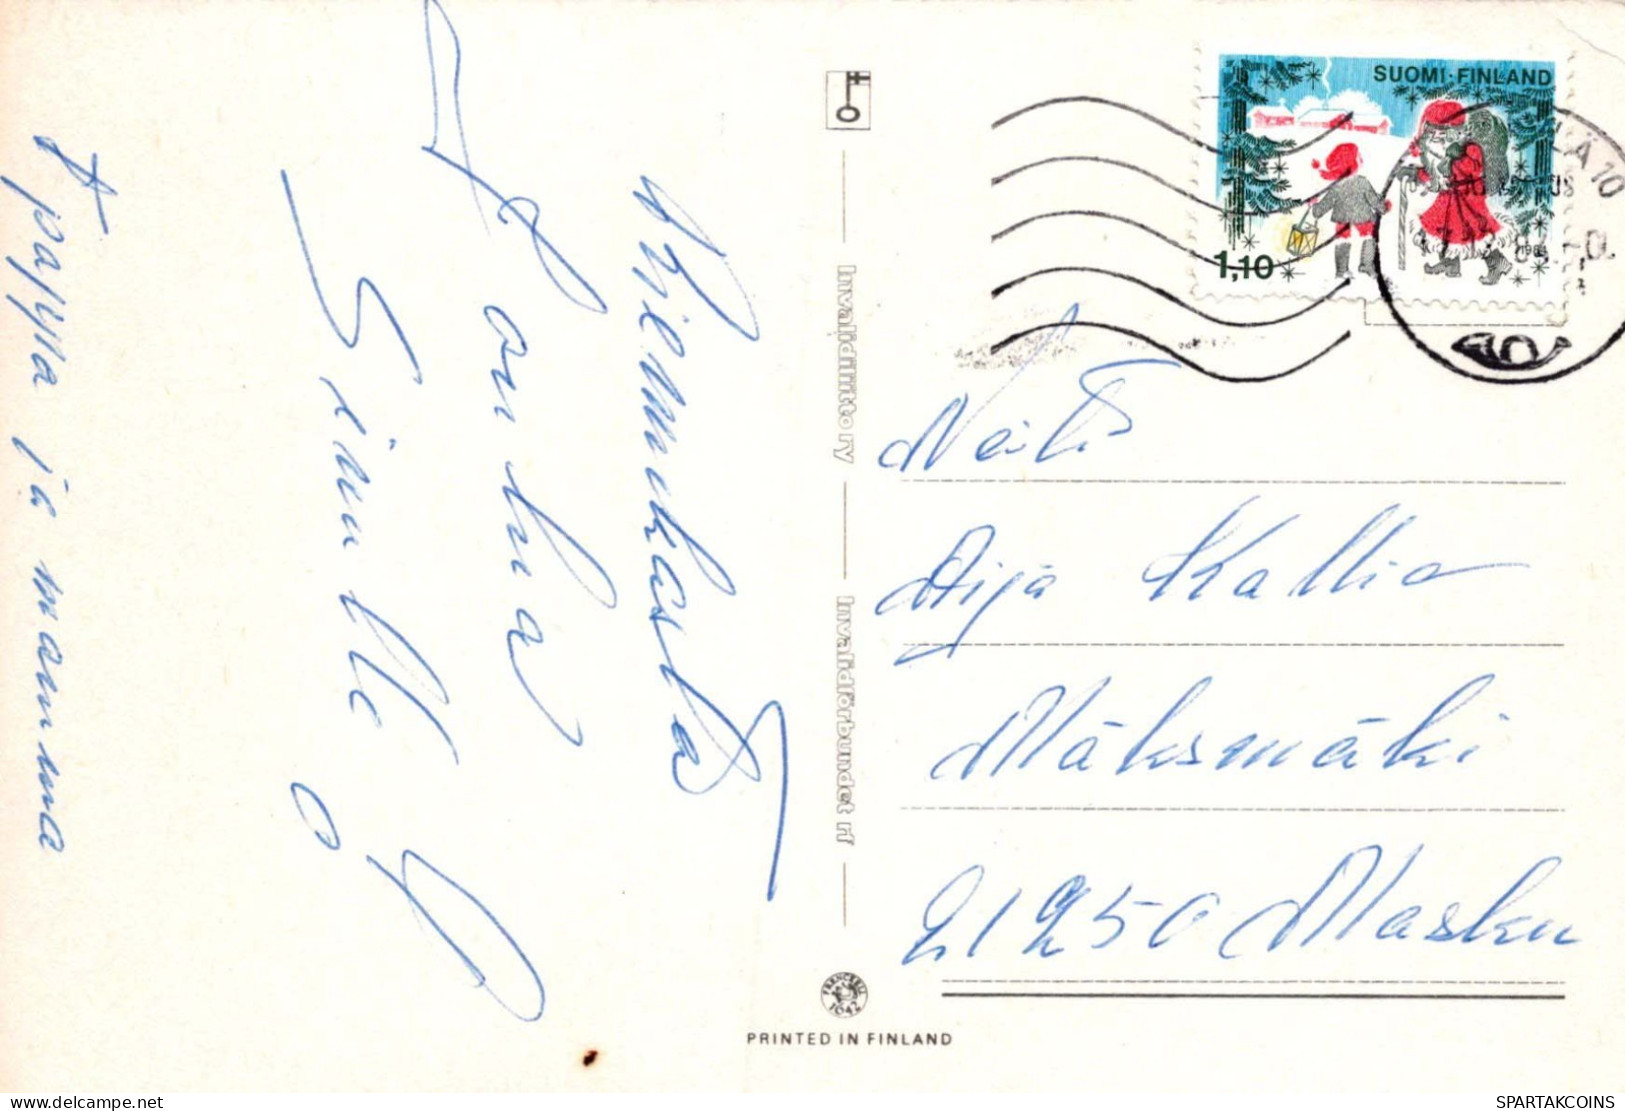 Bonne Année Noël GNOME Vintage Carte Postale CPSM #PAY539.FR - New Year